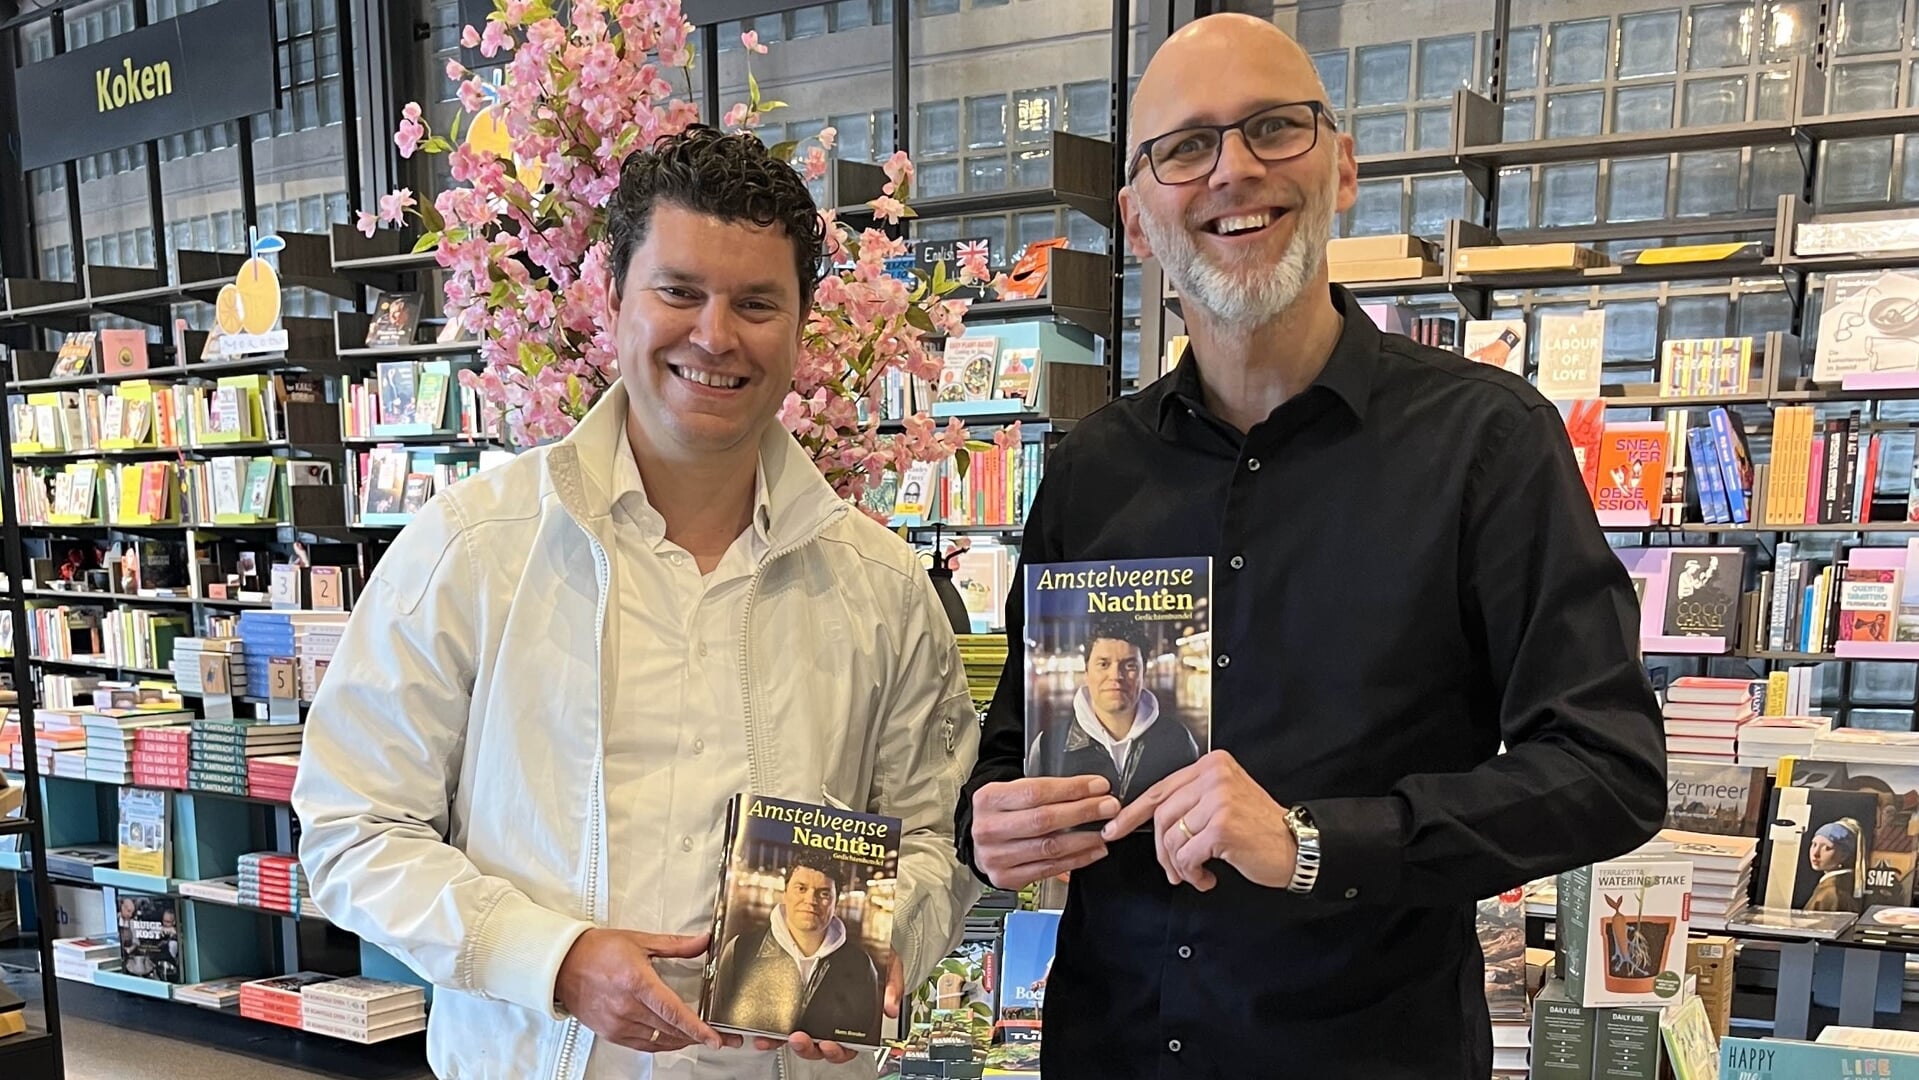 Dichter Hans Breuker en Remco Houtepen van boekhandel Libris Venstra met de nieuwe gedichtenbundel 'Amstelveense Nachten'.